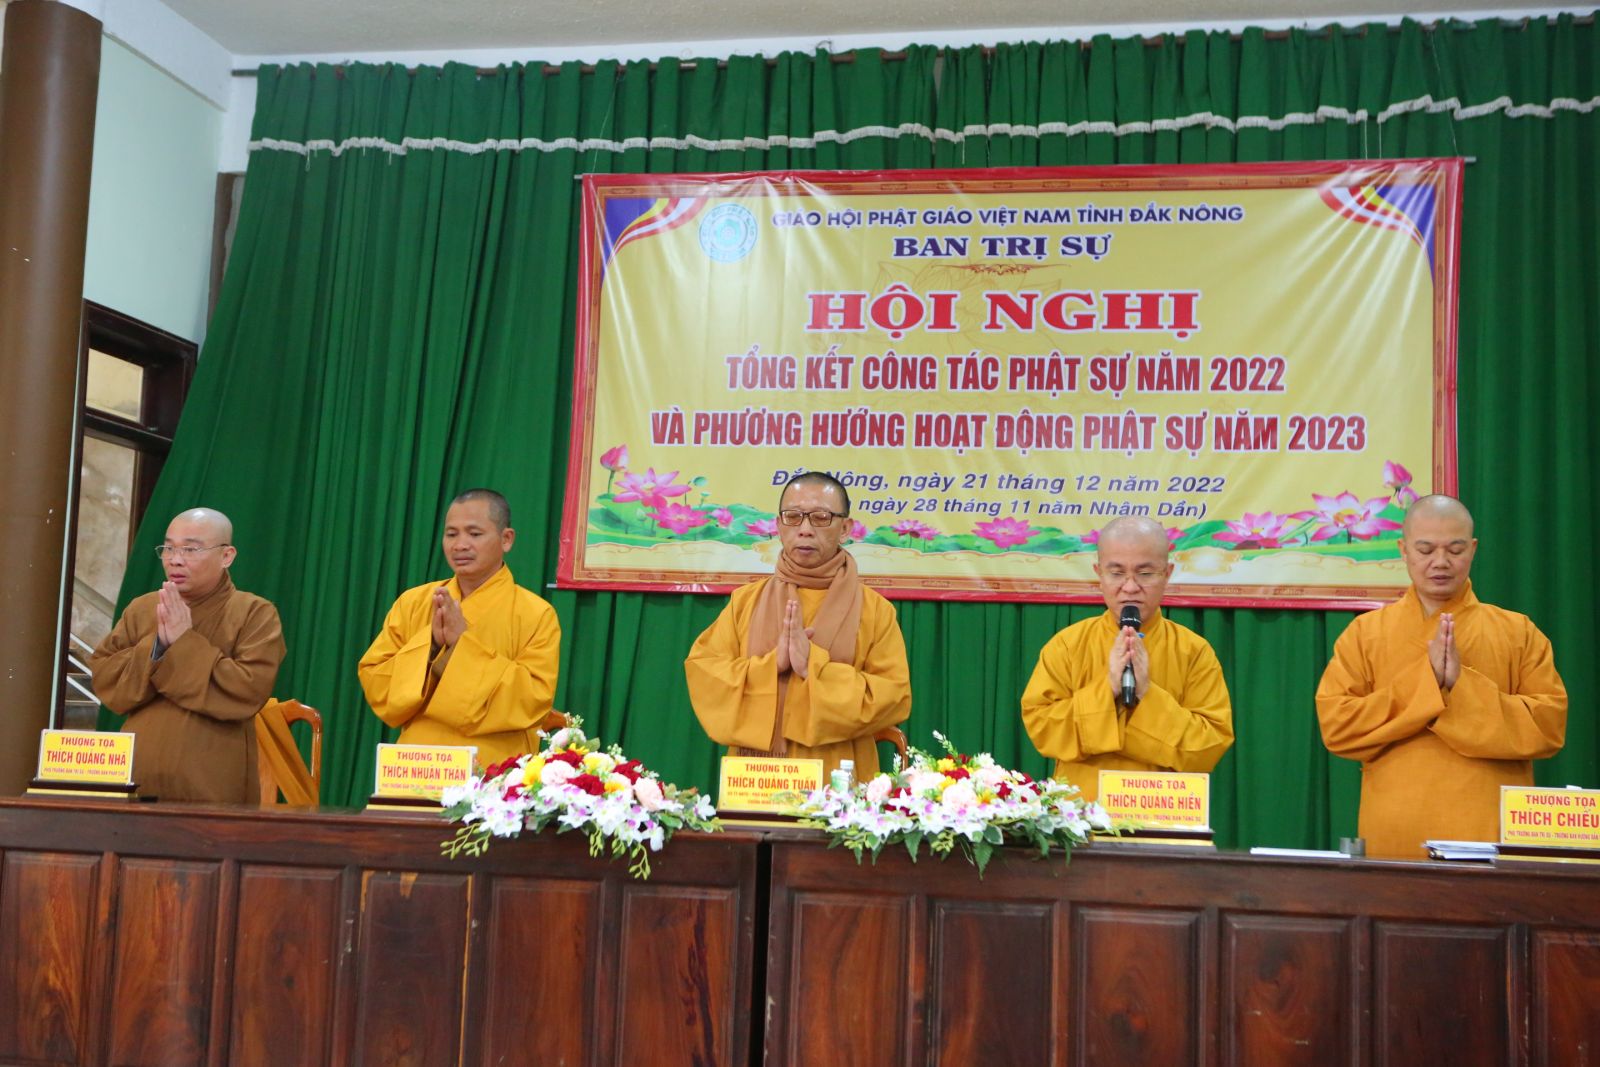 Ban Trị sự Phật giáo tỉnh Đắk Nông tổng kết hoạt động Phật sự năm 2022 và phương hướng hoạt động năm 2023